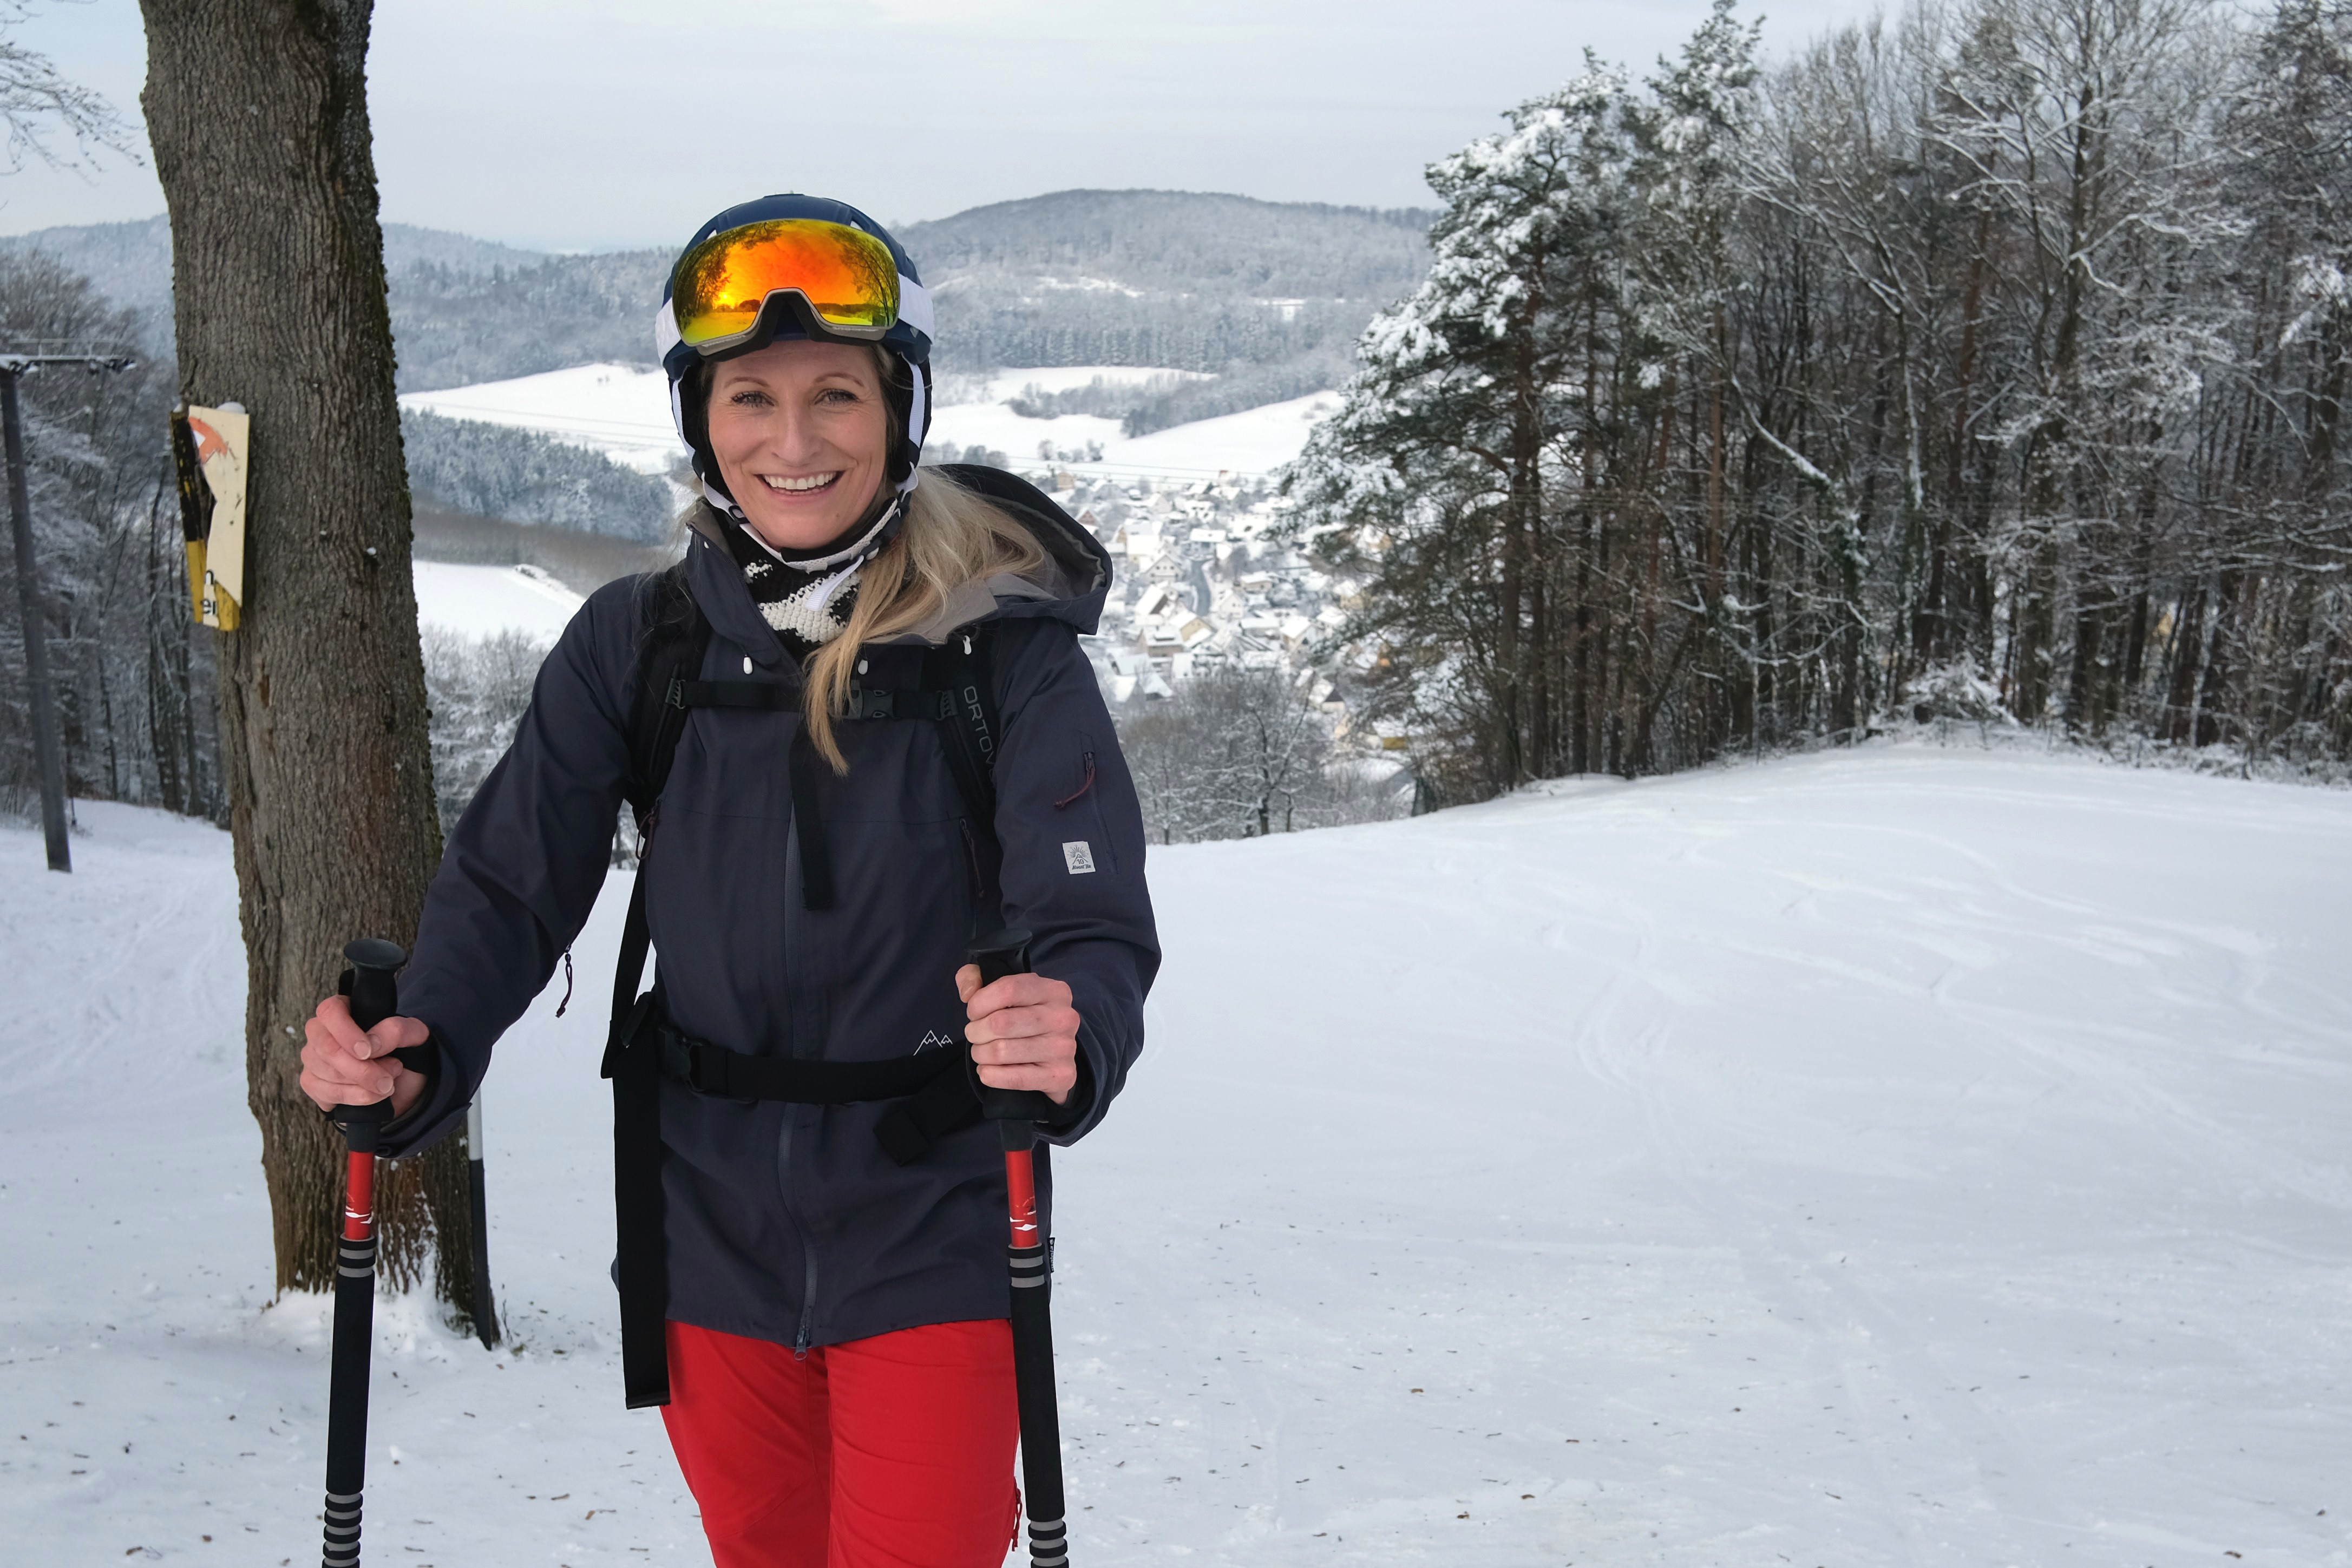 Der längste Skilift Mittelfrankens ist 700 m lang und mit Doppelschlepplift, Flutlicht und Schneekanonen ausgestattet. Snowboarder können sich im Snow-Park vergnügen.